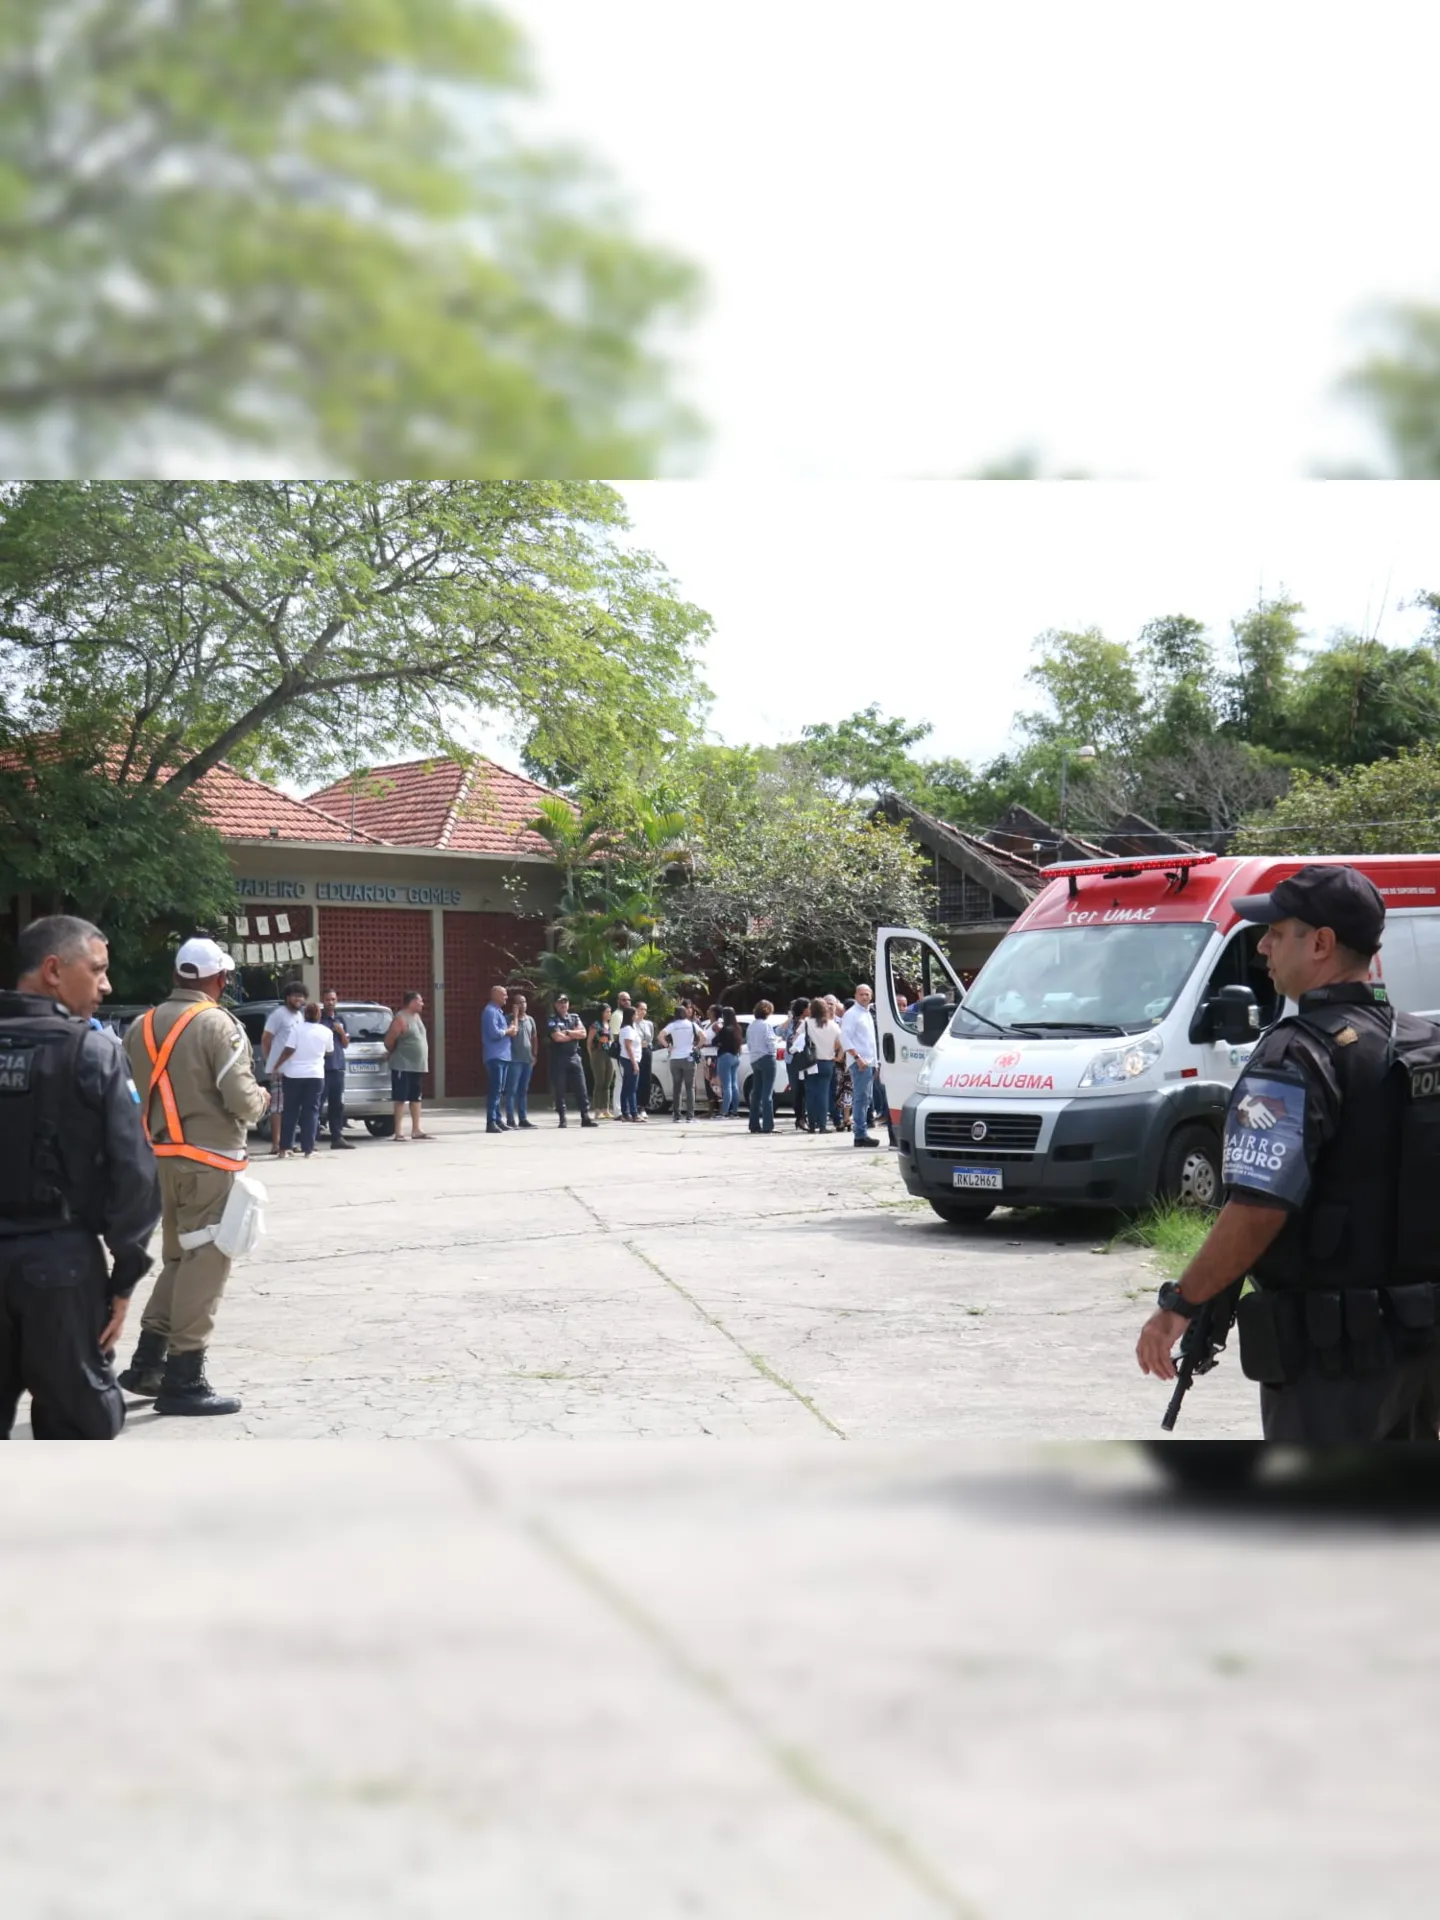 Ataque aconteceu na Escola Municipal Brigadeiro Eduardo Gomes, na Ilha do Governador